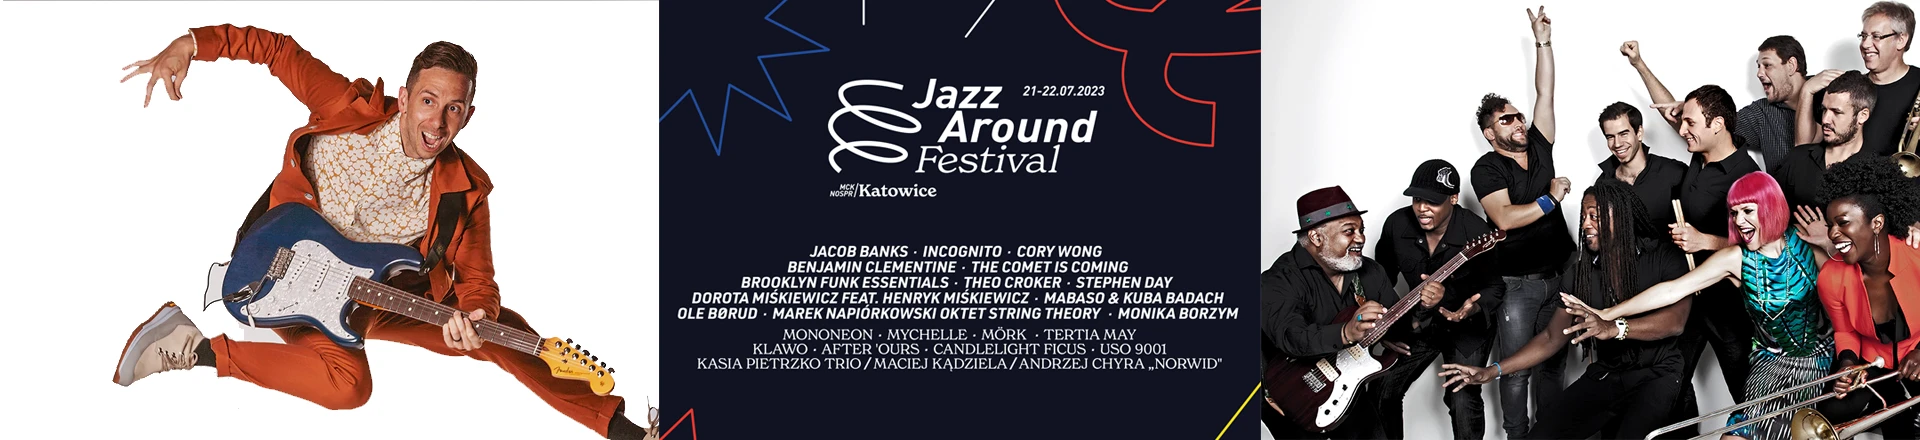 Znamy pełny lineup Jazz Around Festival 2023